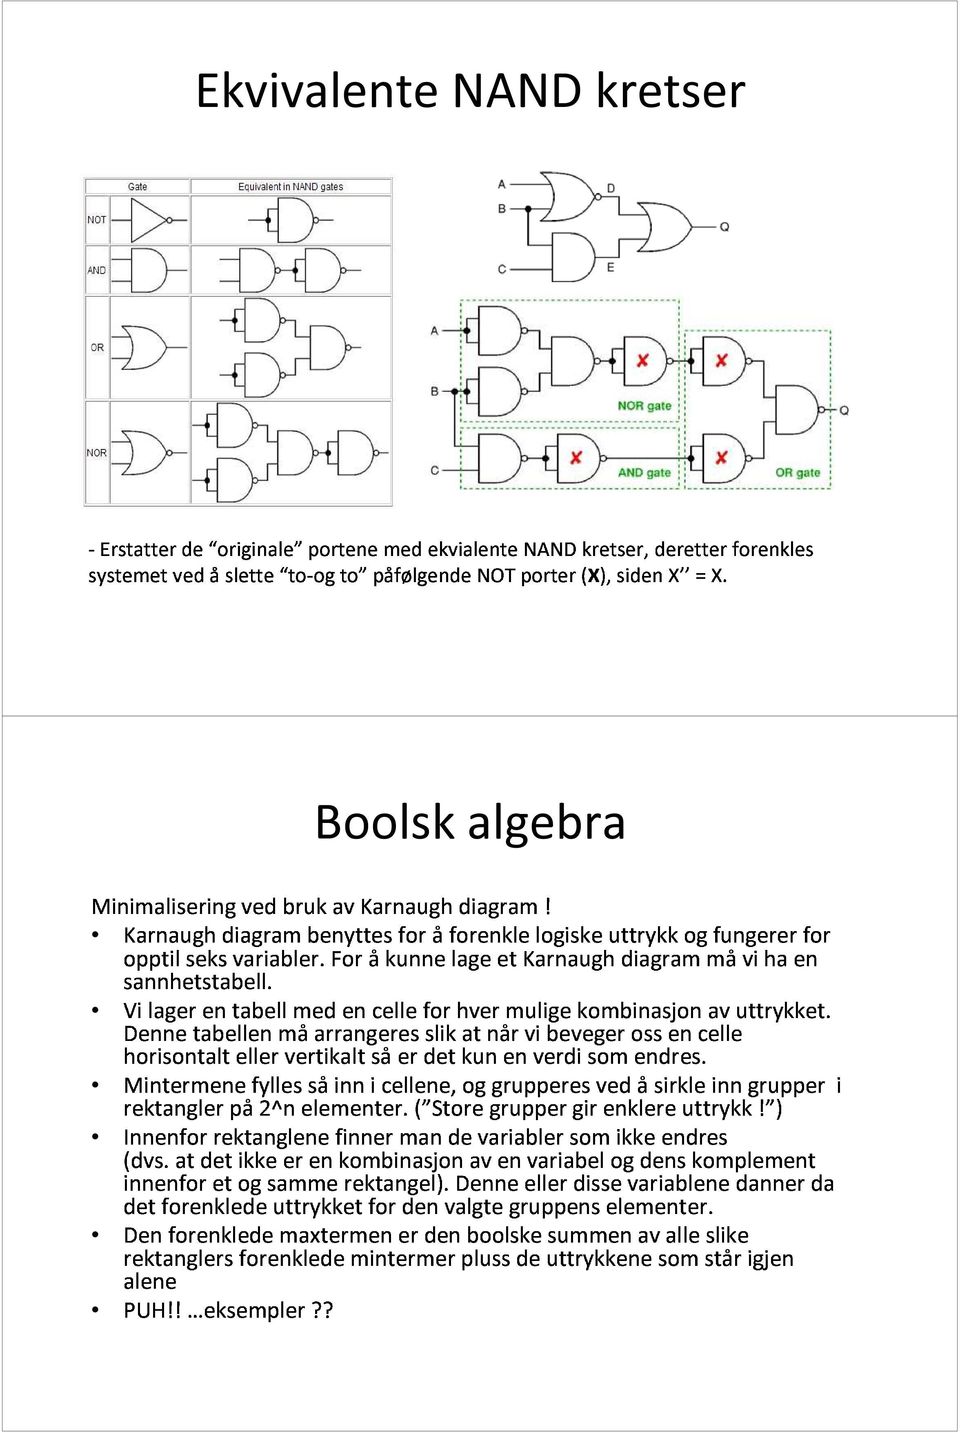 måarrangeres For åkunne lage et Karnaugh diagram måvi ha en Boolsk slik at algebra horisontalt rektangler på2^n eller vertikalt elementer.